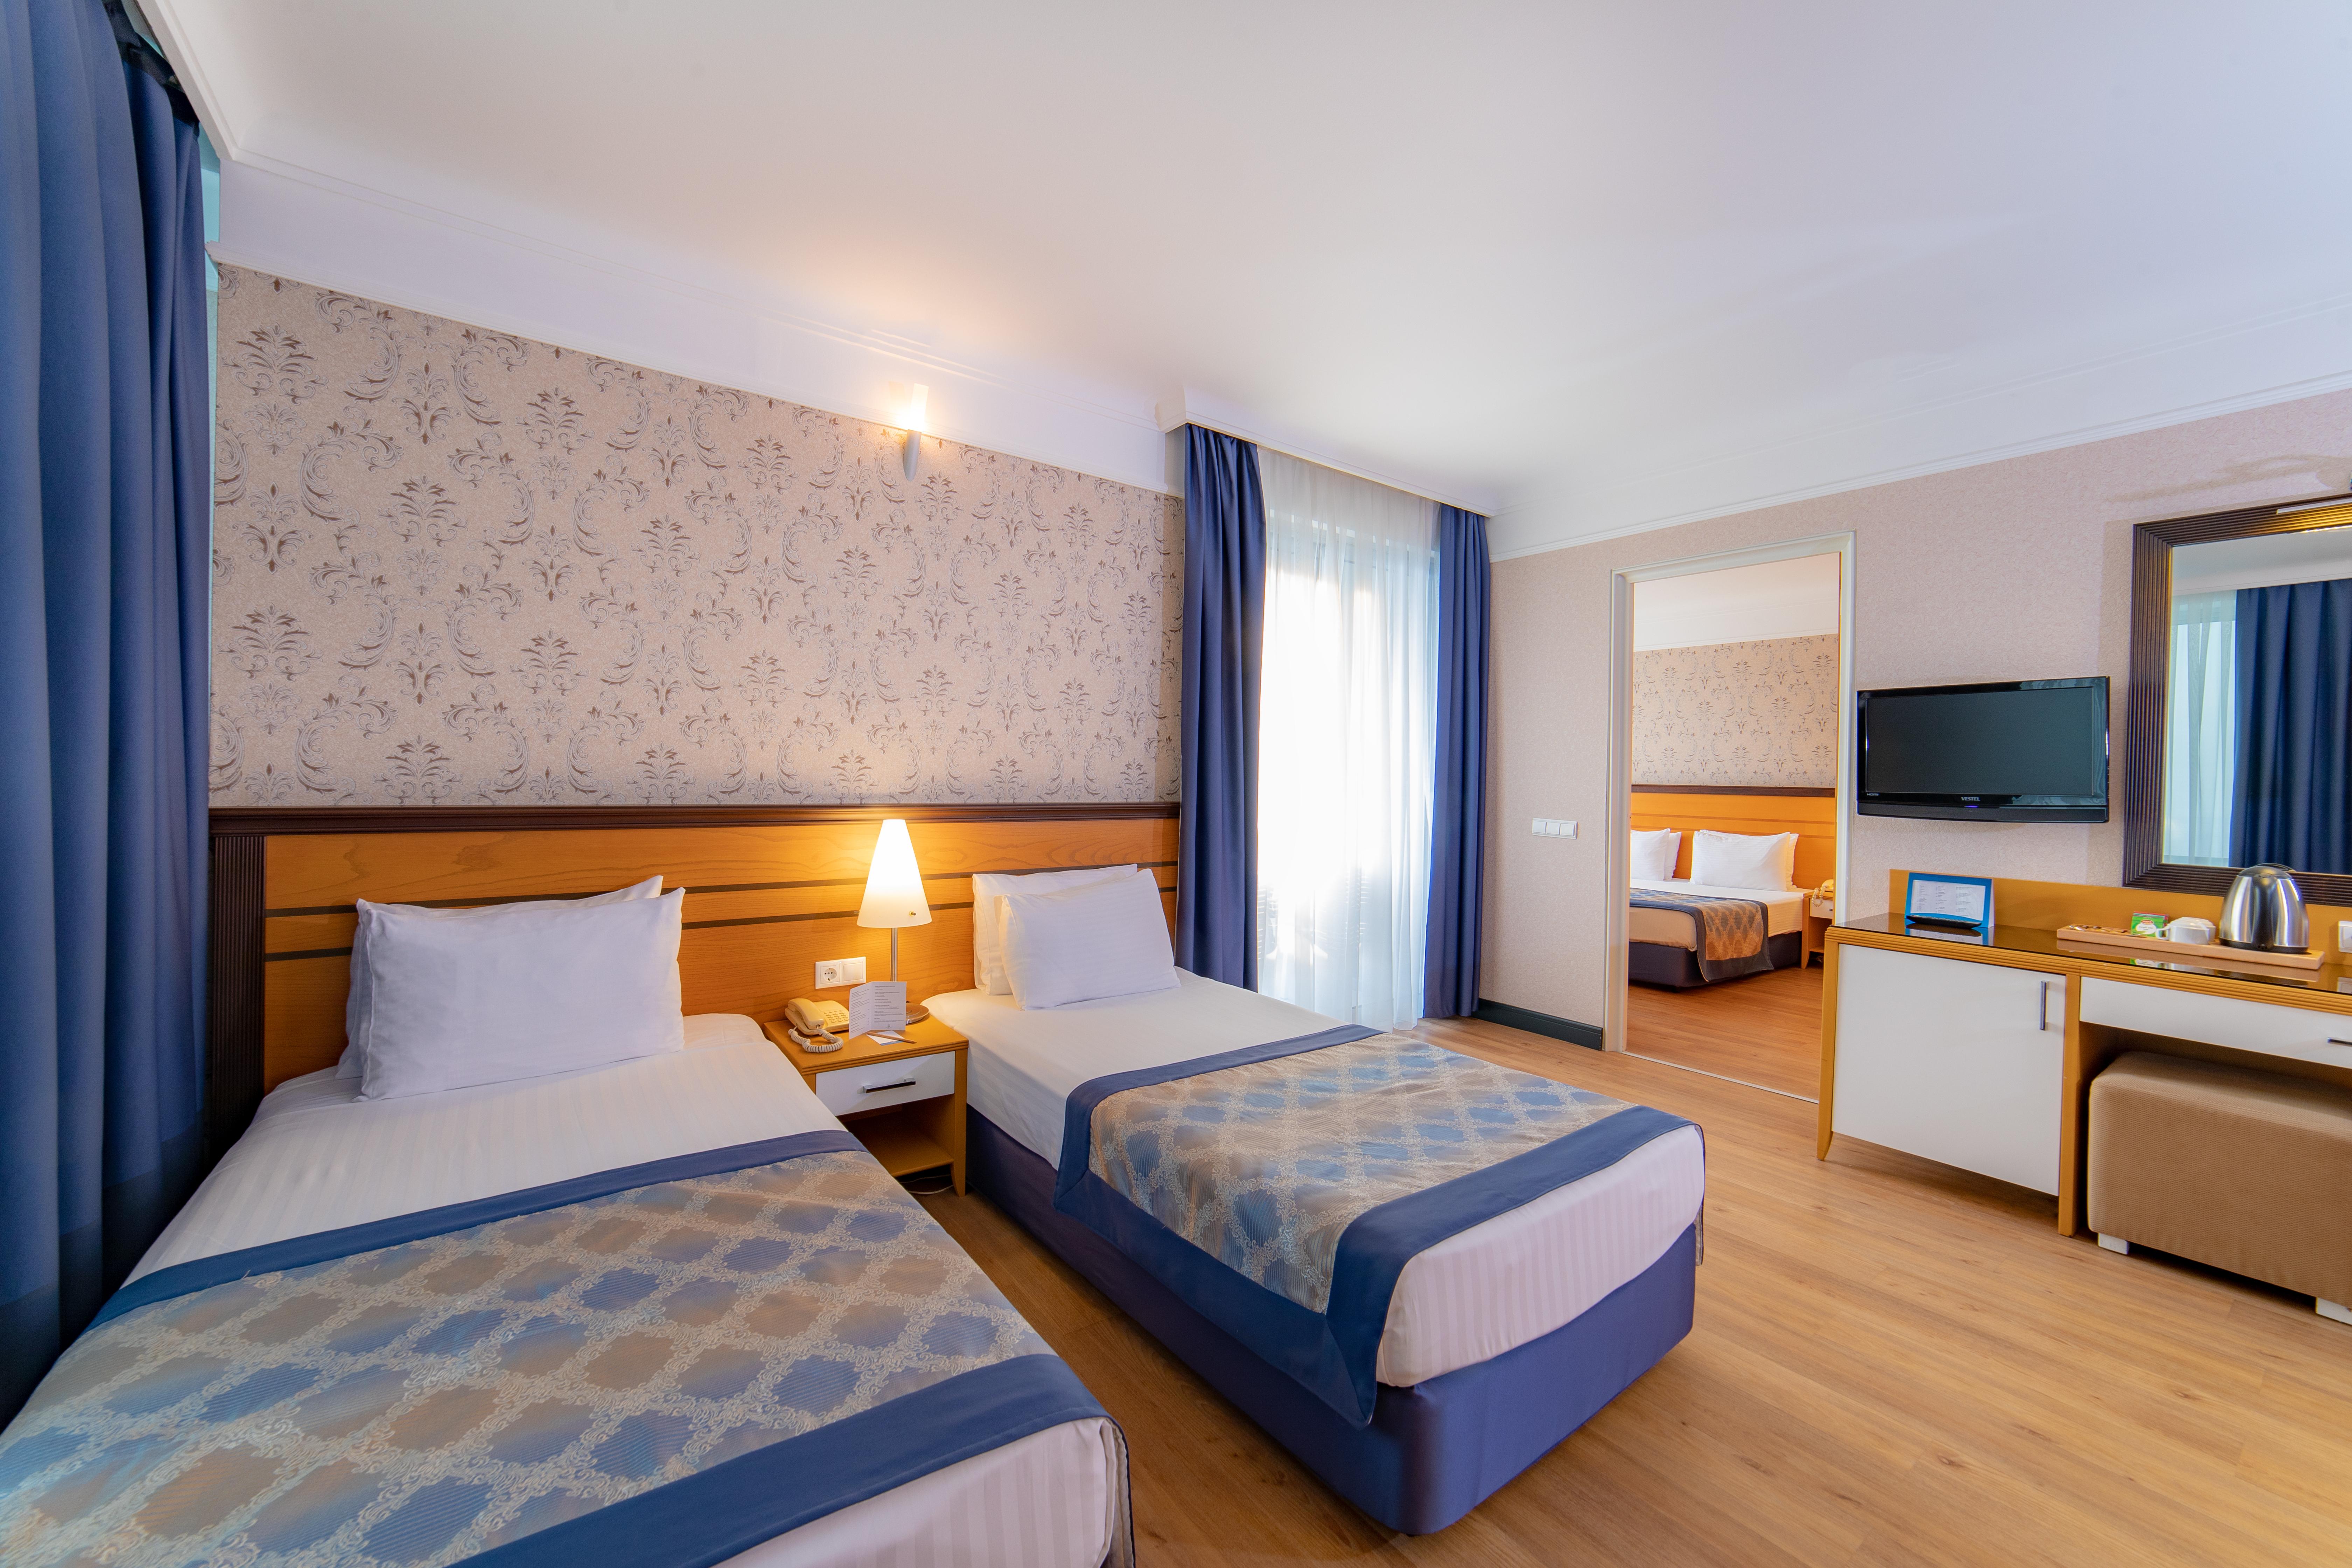 Porto bello hotel resort